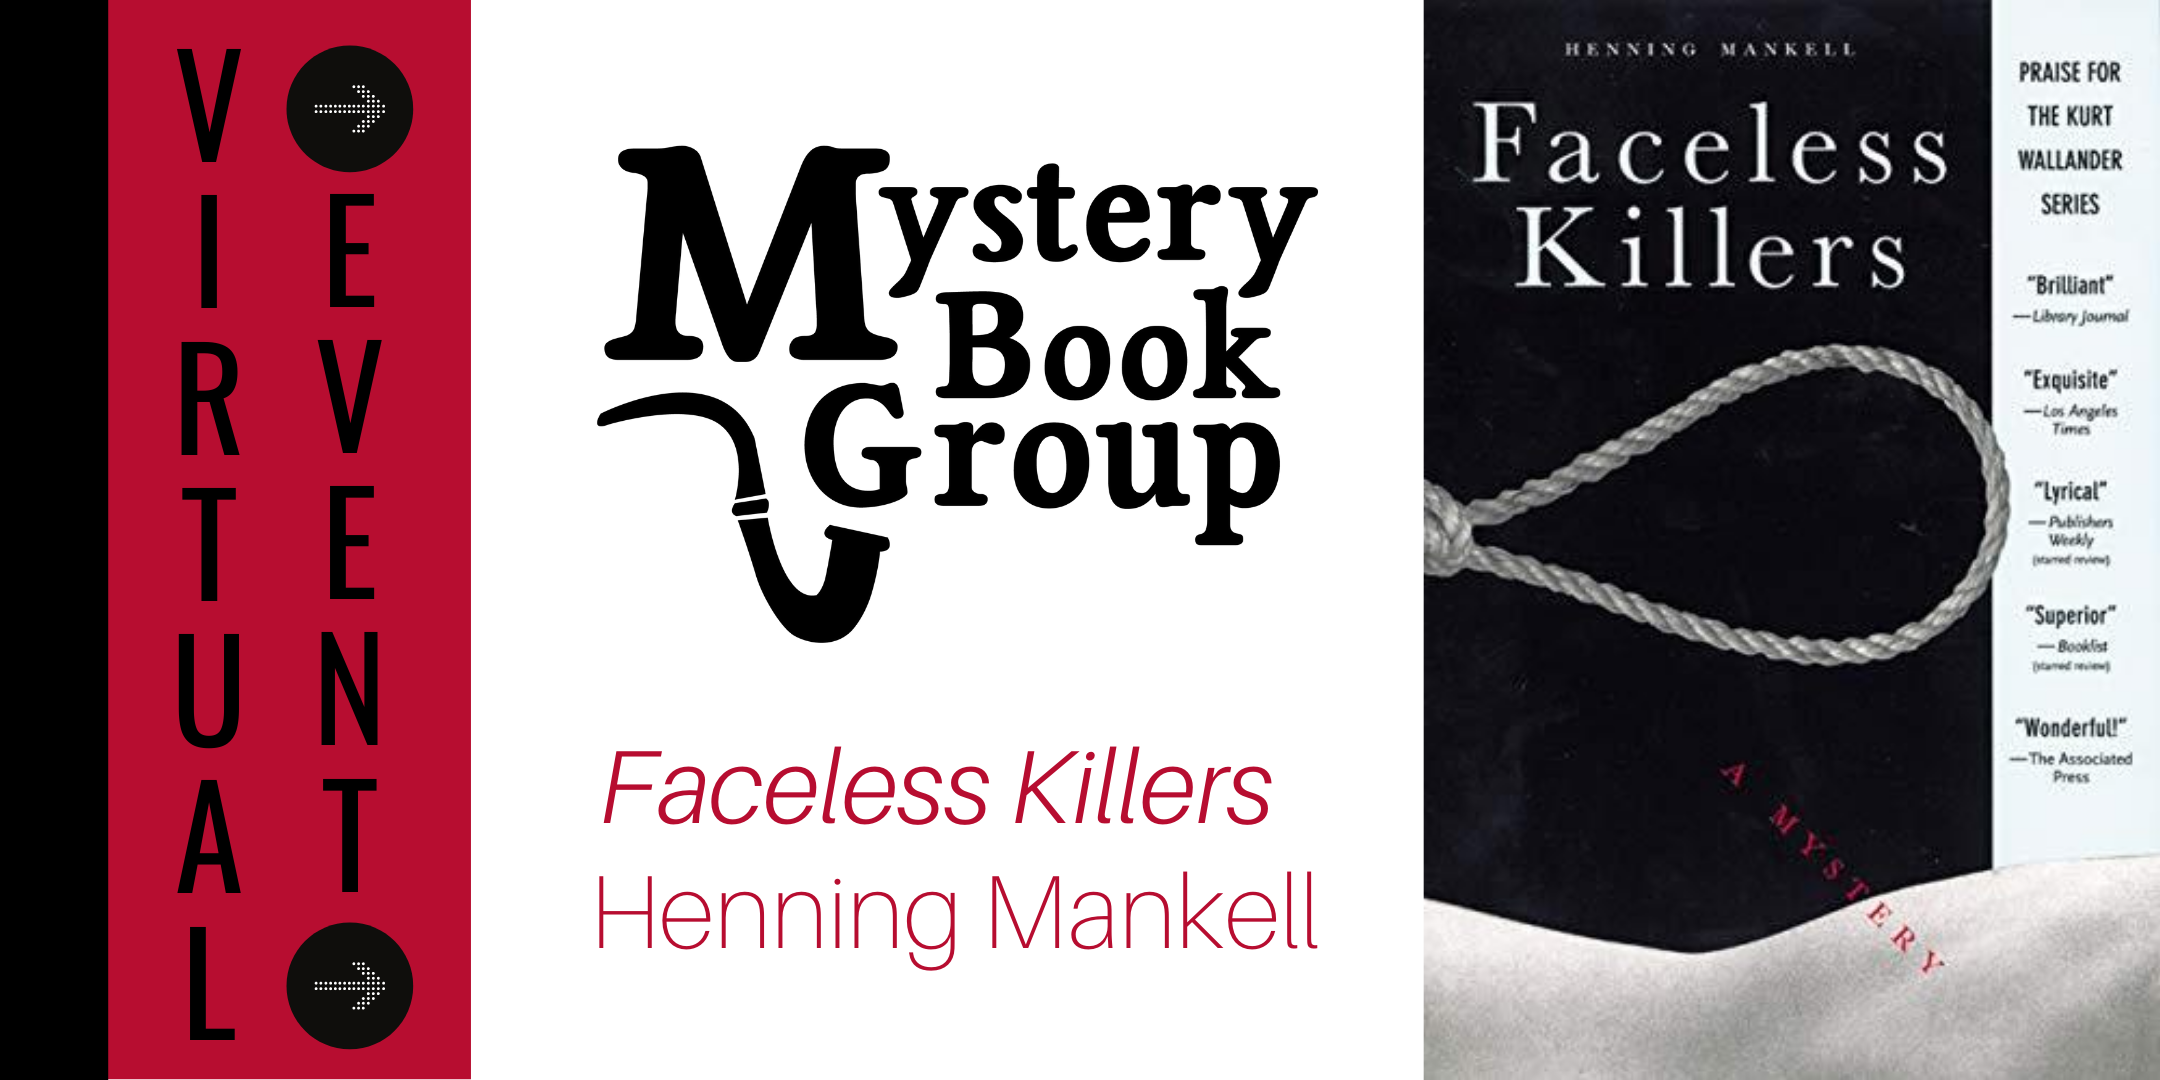 faceless killers henning mankell